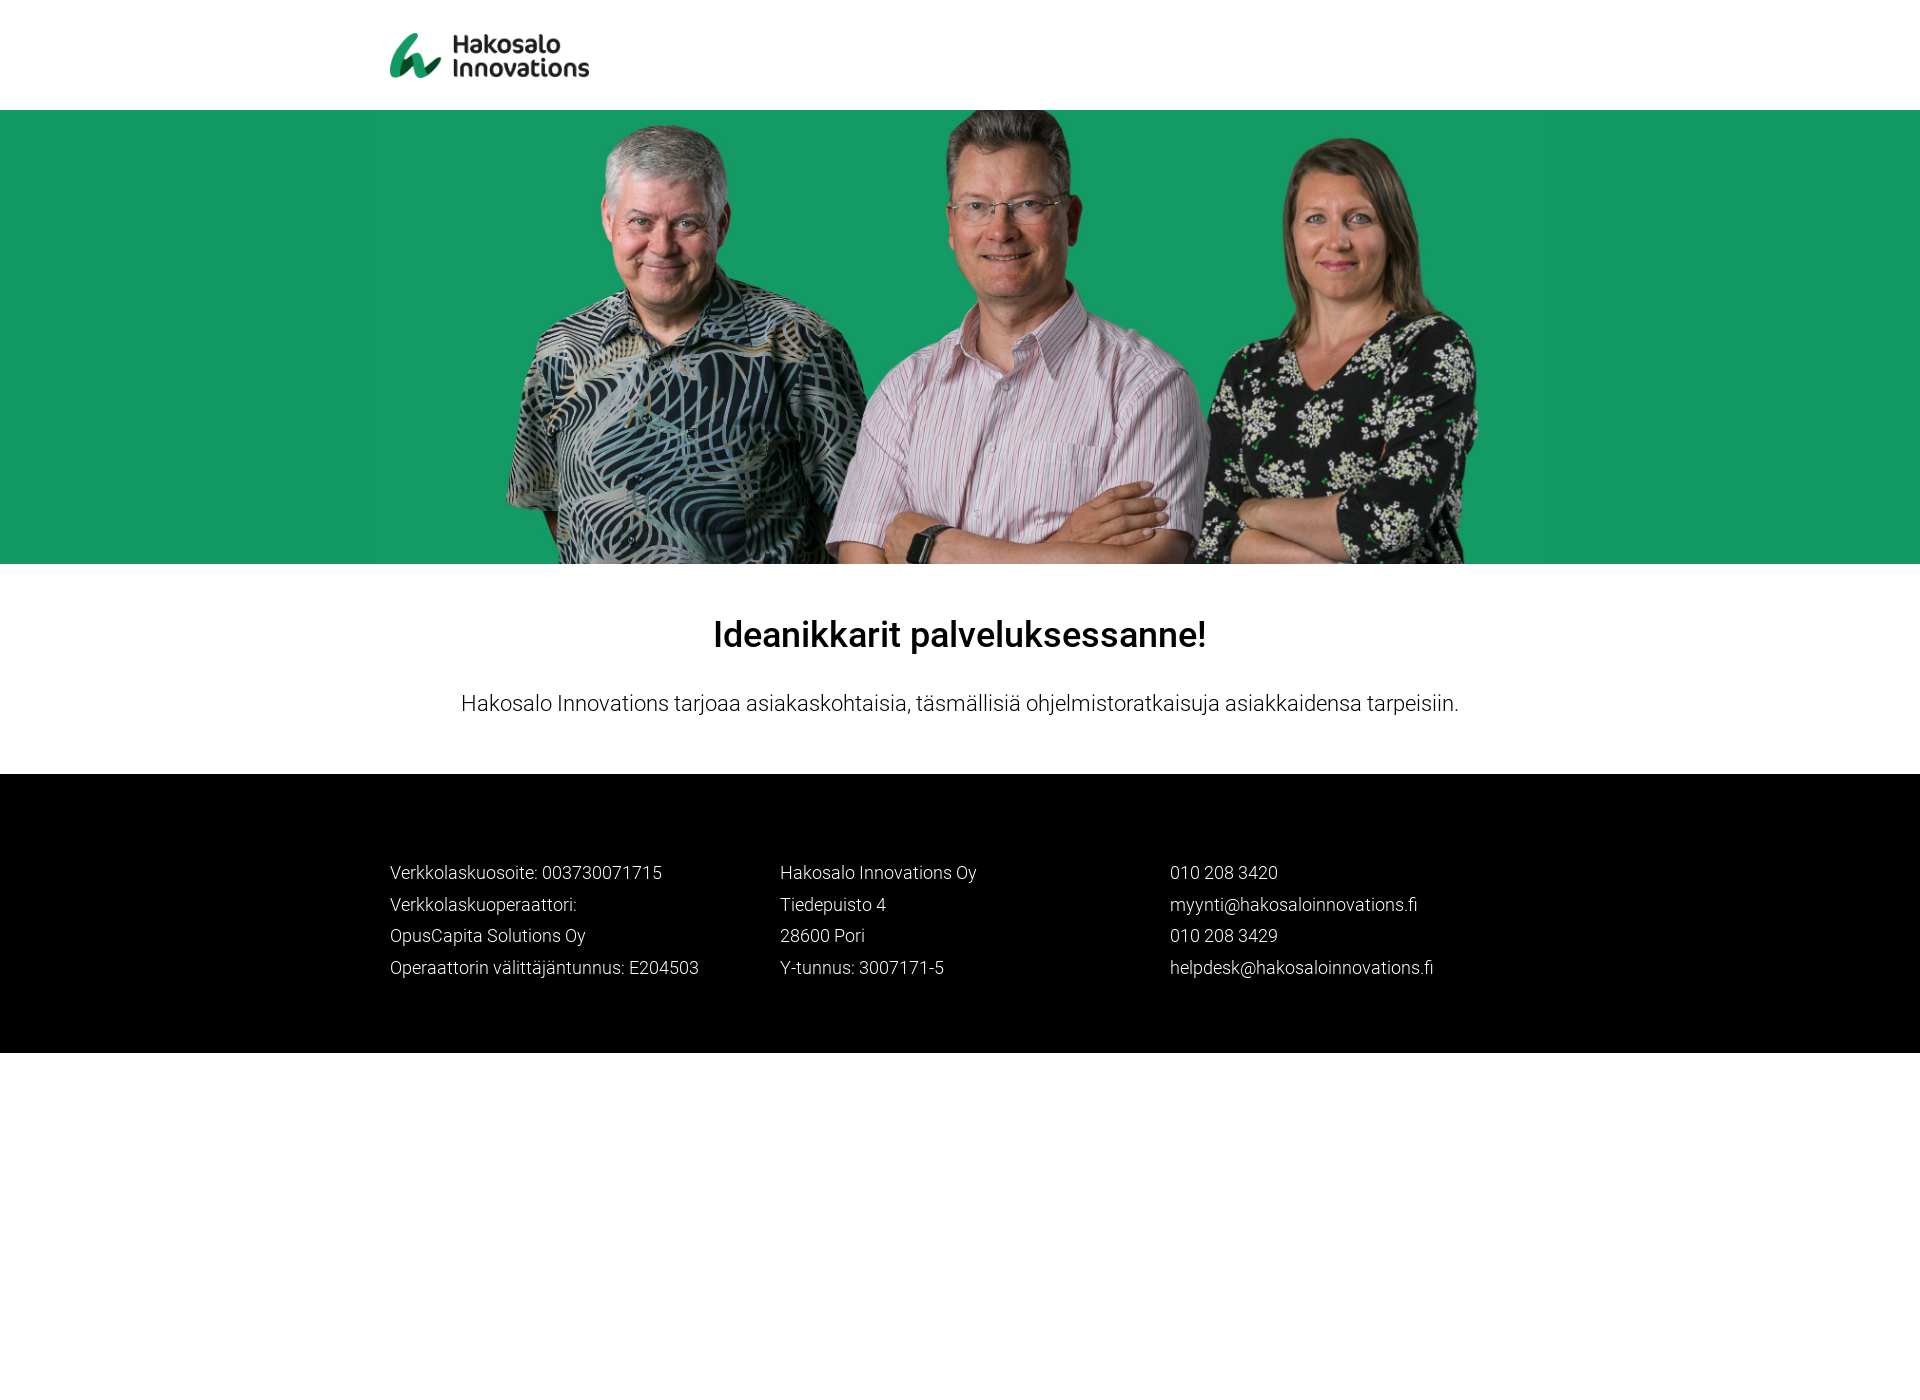 Näyttökuva hakosaloinnovations.fi